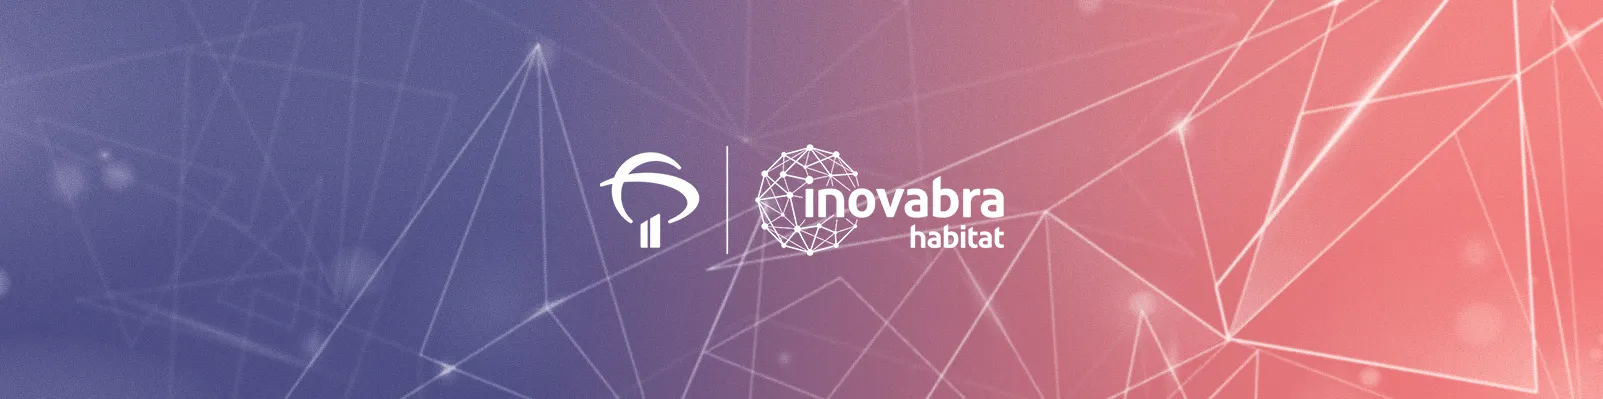 Hoje vamos conhecer o InovaBra Habitat